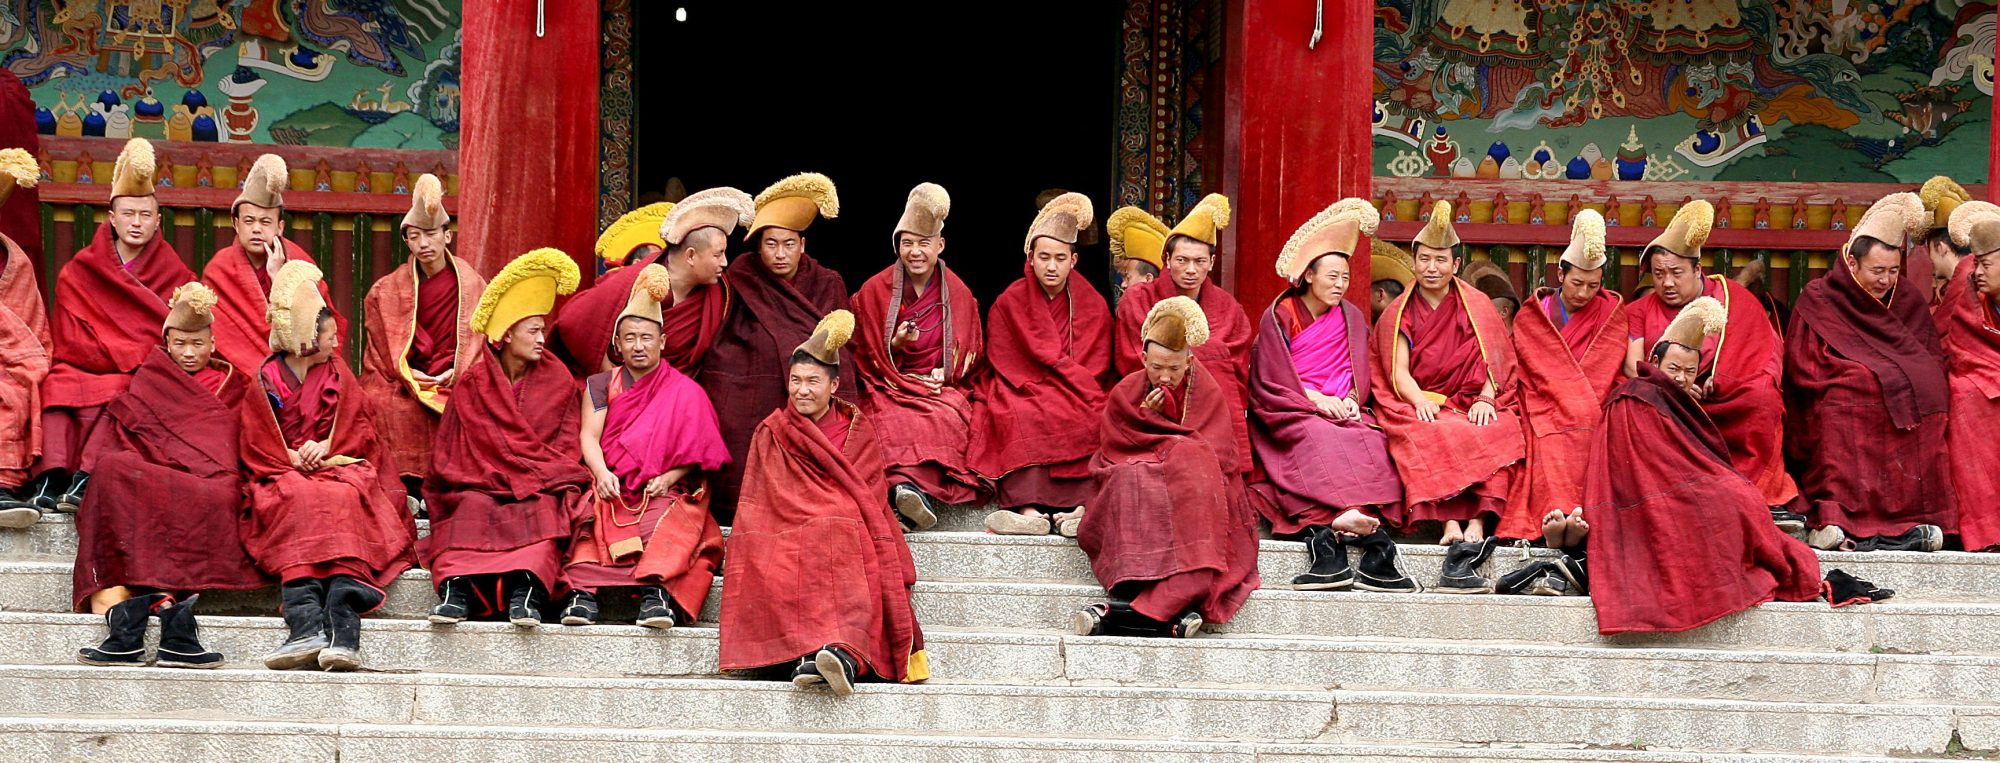 De ernst van de lach in de Tibetaanse cultuur